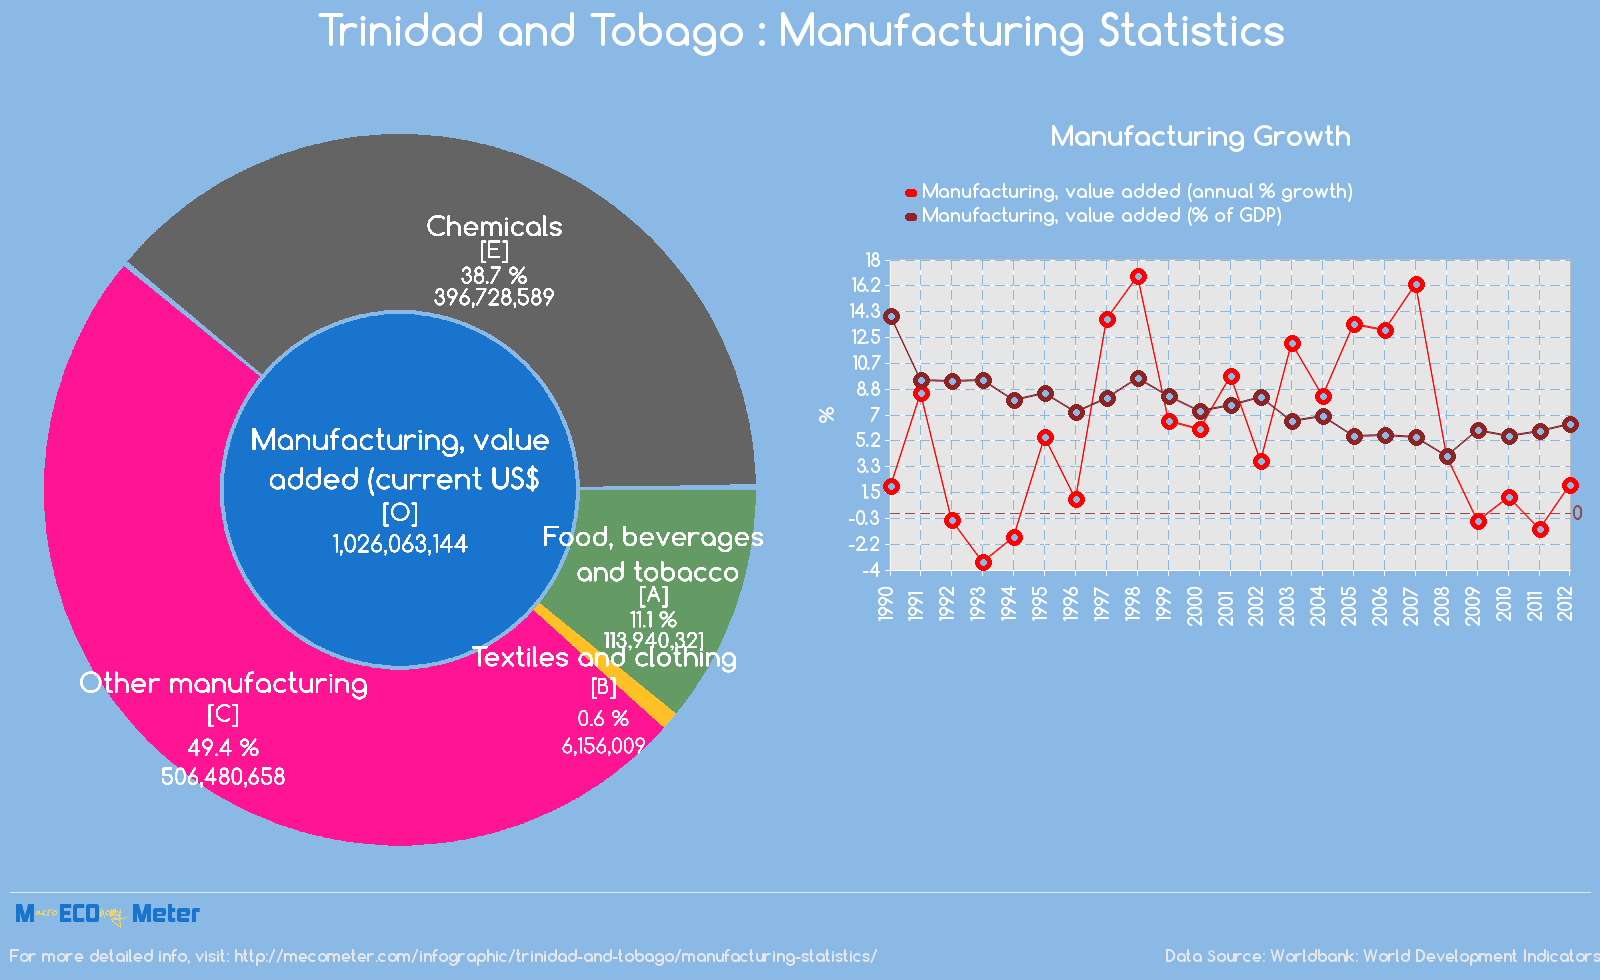 Trinidad and Tobago : Manufacturing Statistics